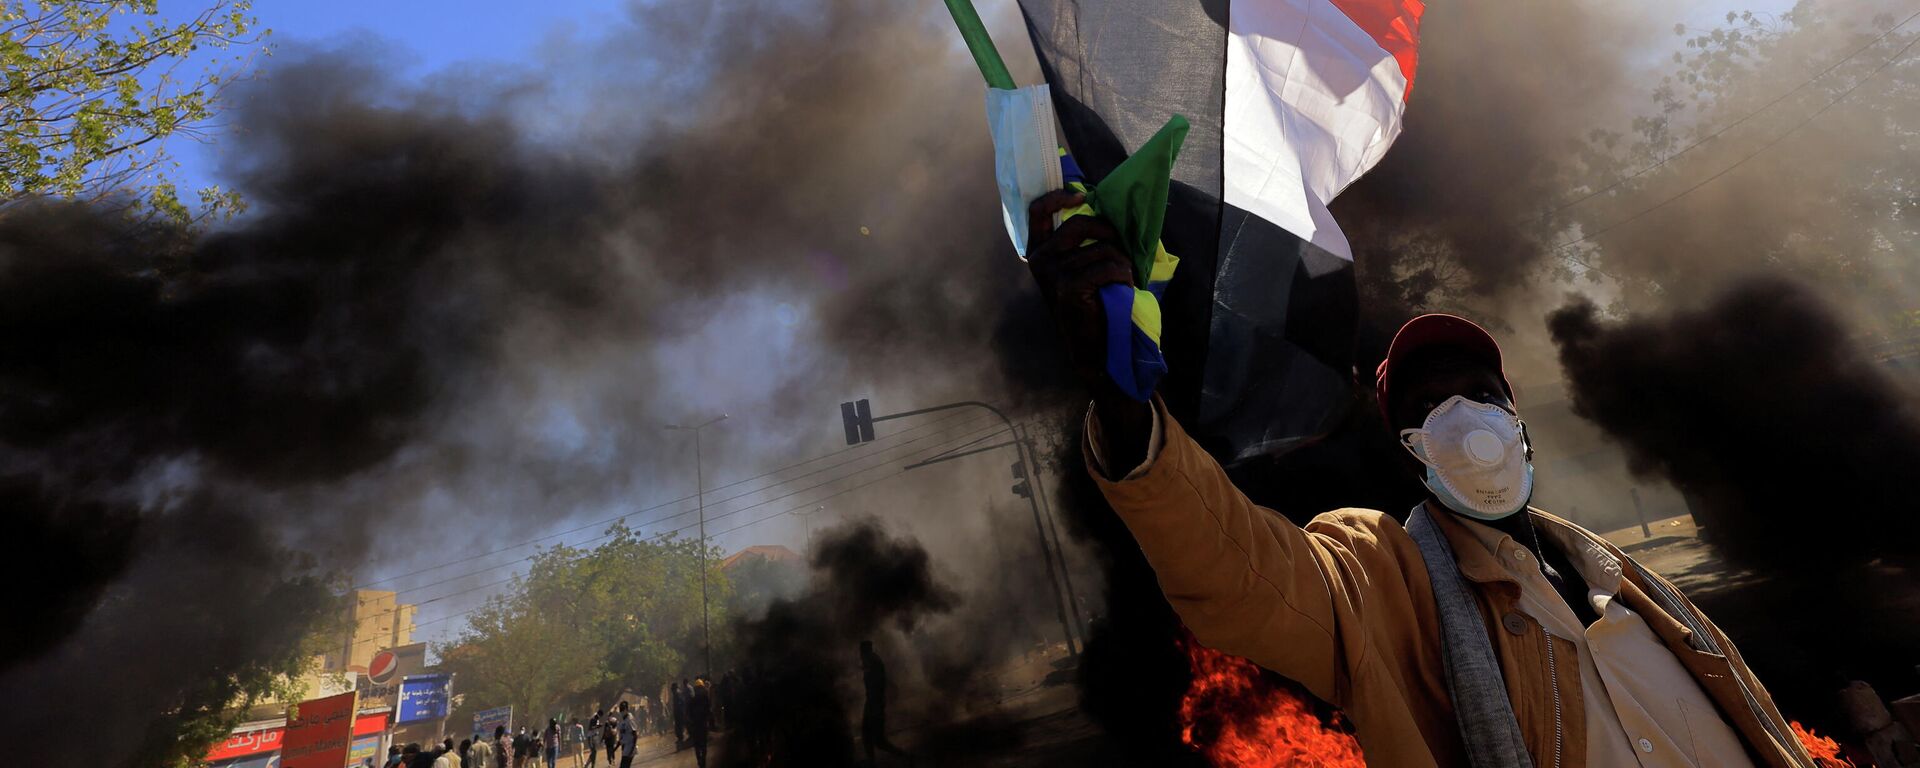 متظاهر في السودان يرفع علم بلاده أثناء احتجاجات الجمعة 31 ديسمبر  - سبوتنيك عربي, 1920, 29.01.2022